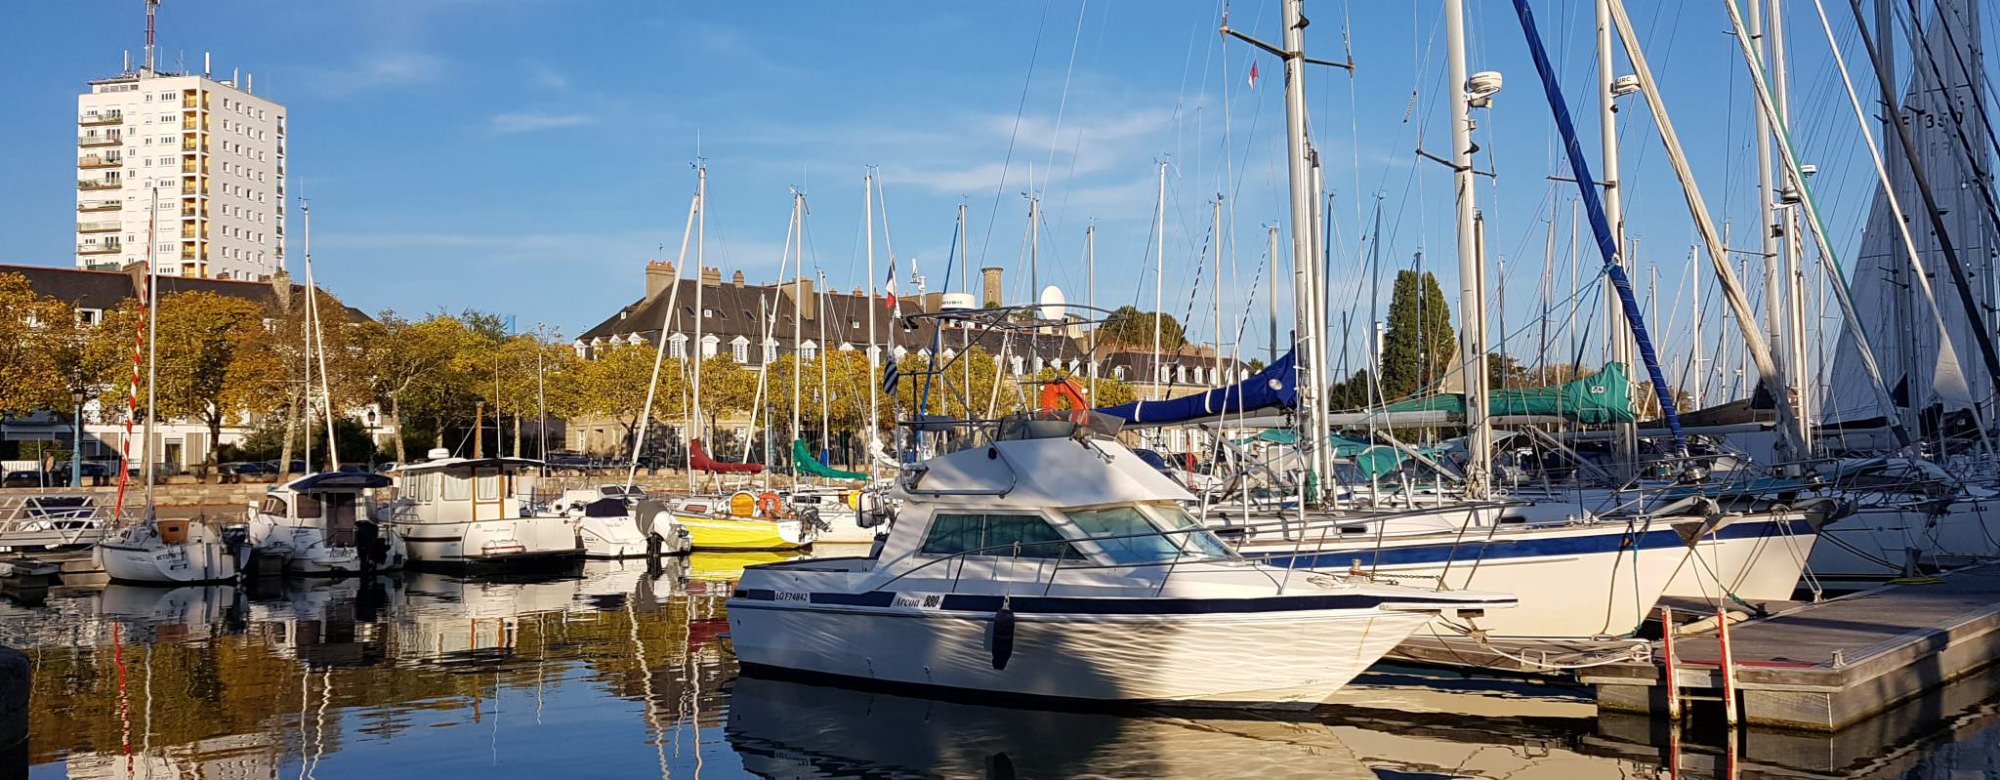 Le bassin à flots et le port de plaisance de Lorient